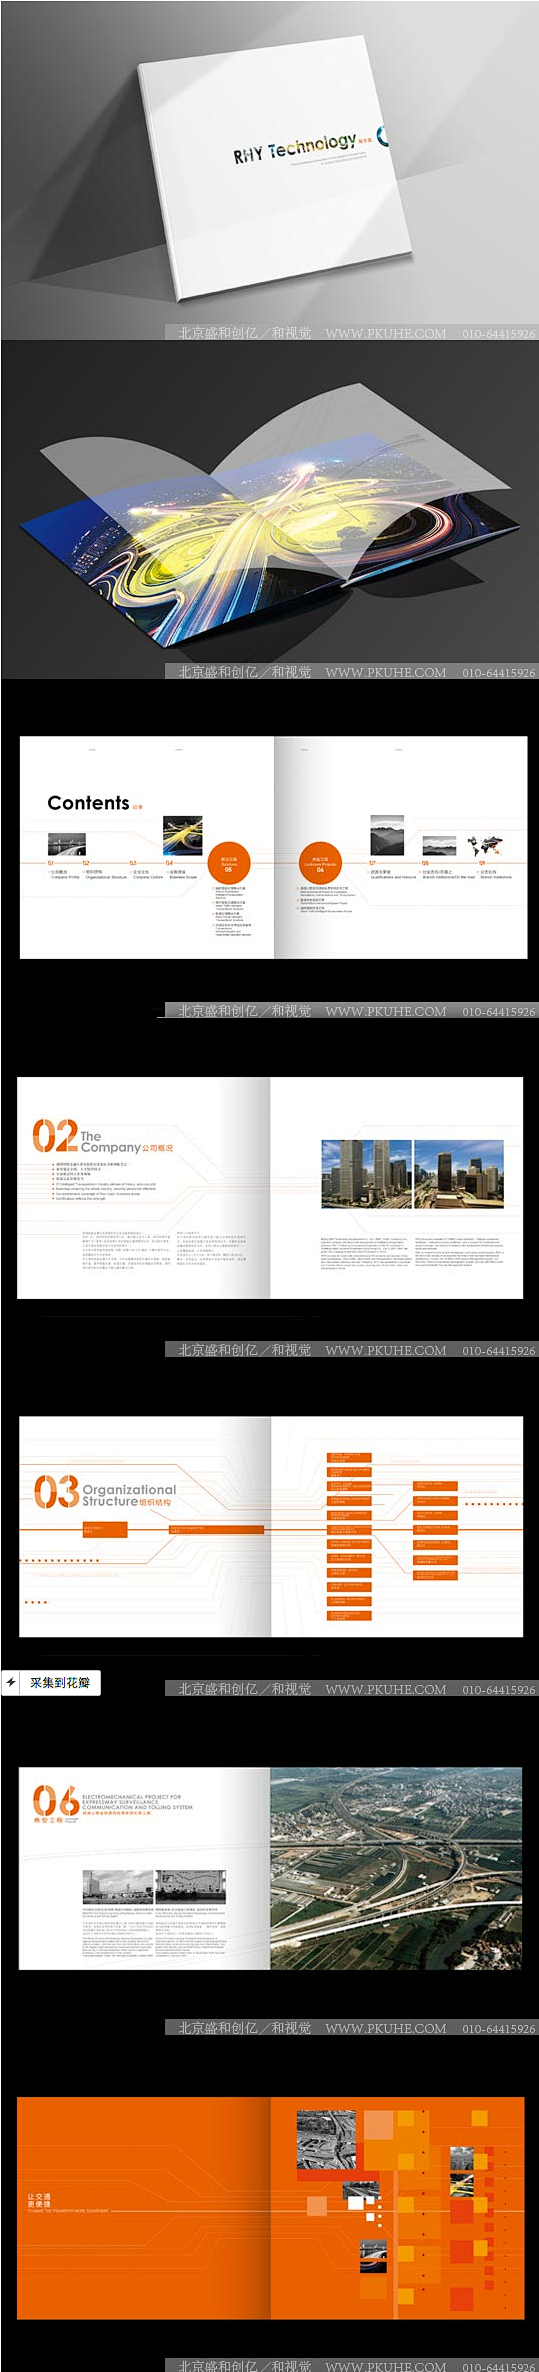 瑞华赢企业宣传册设计画册设计,宣传册设计...